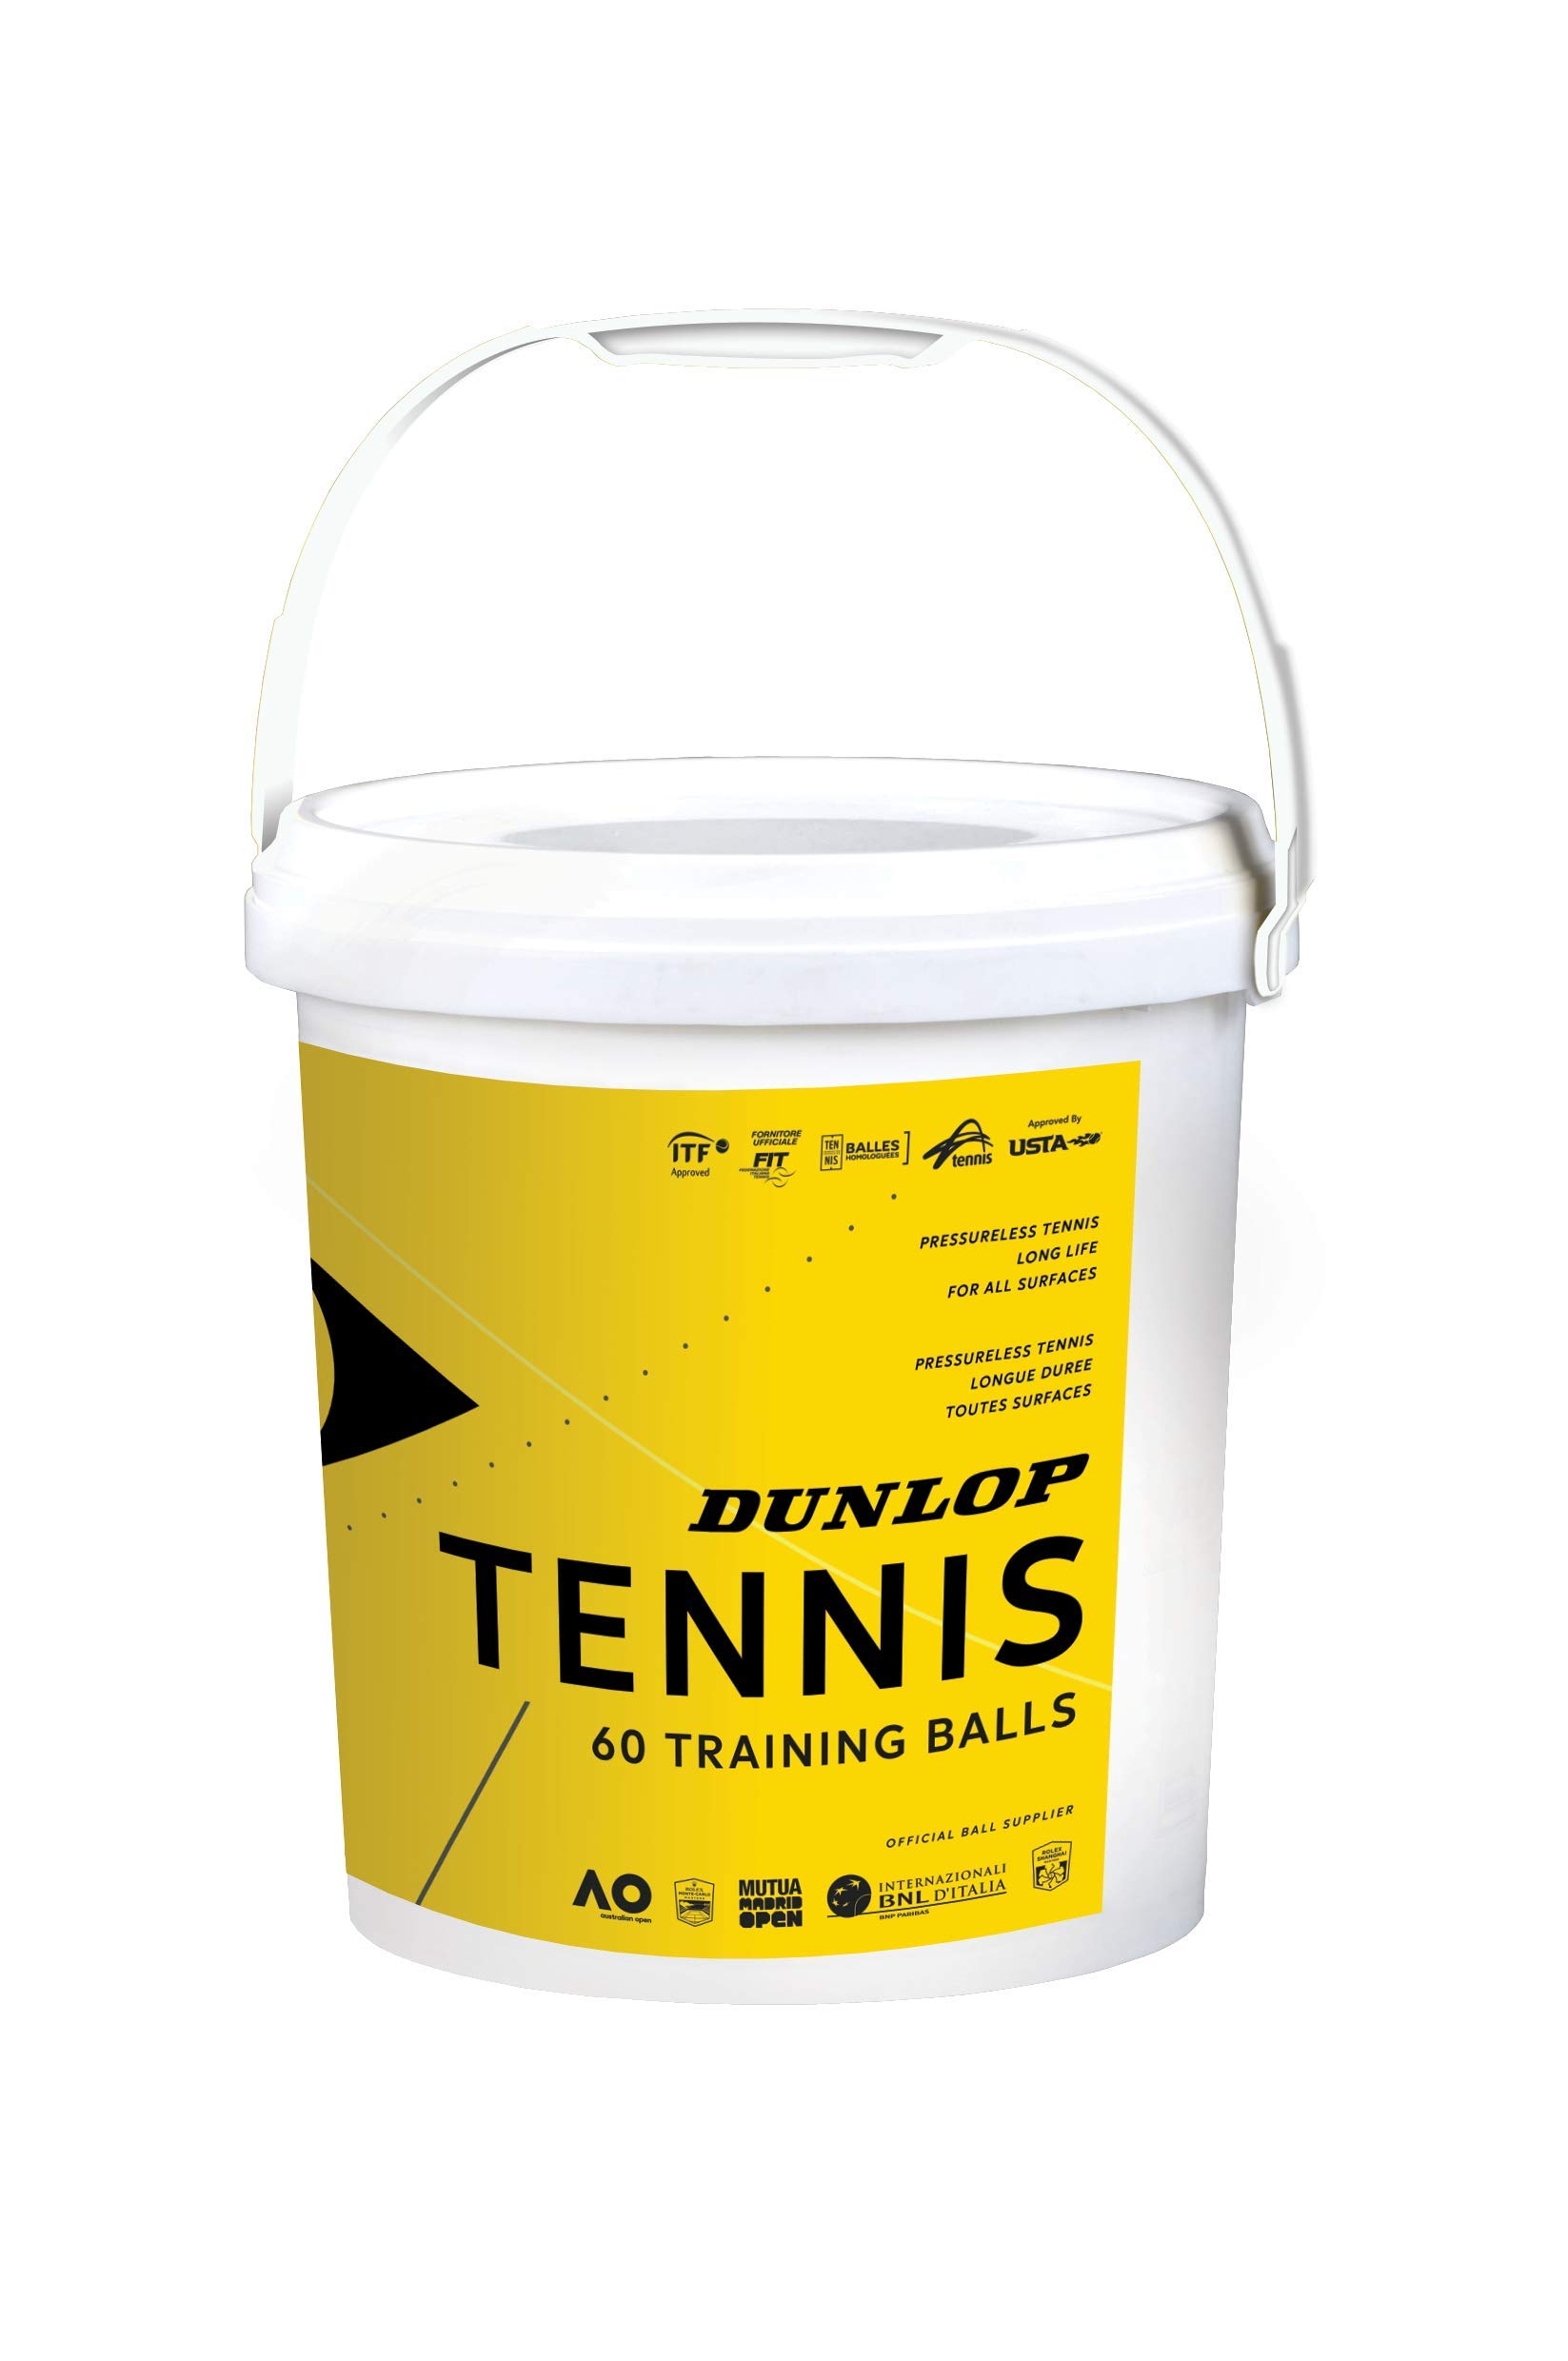 Dunlop Tennisball Training - 60 Bucket, 601341